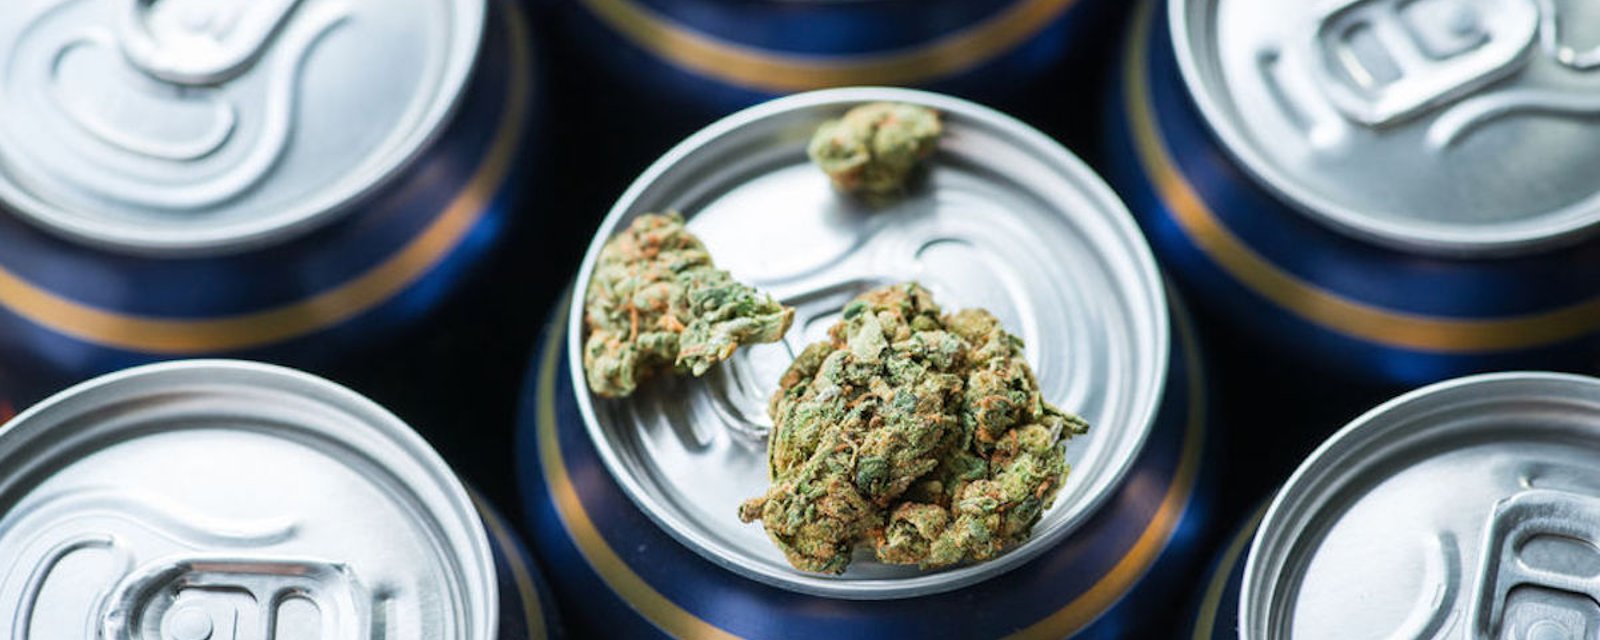 La brasserie Molson Coors lancera sur le marché des boissons non alcoolisées infusées de cannabis